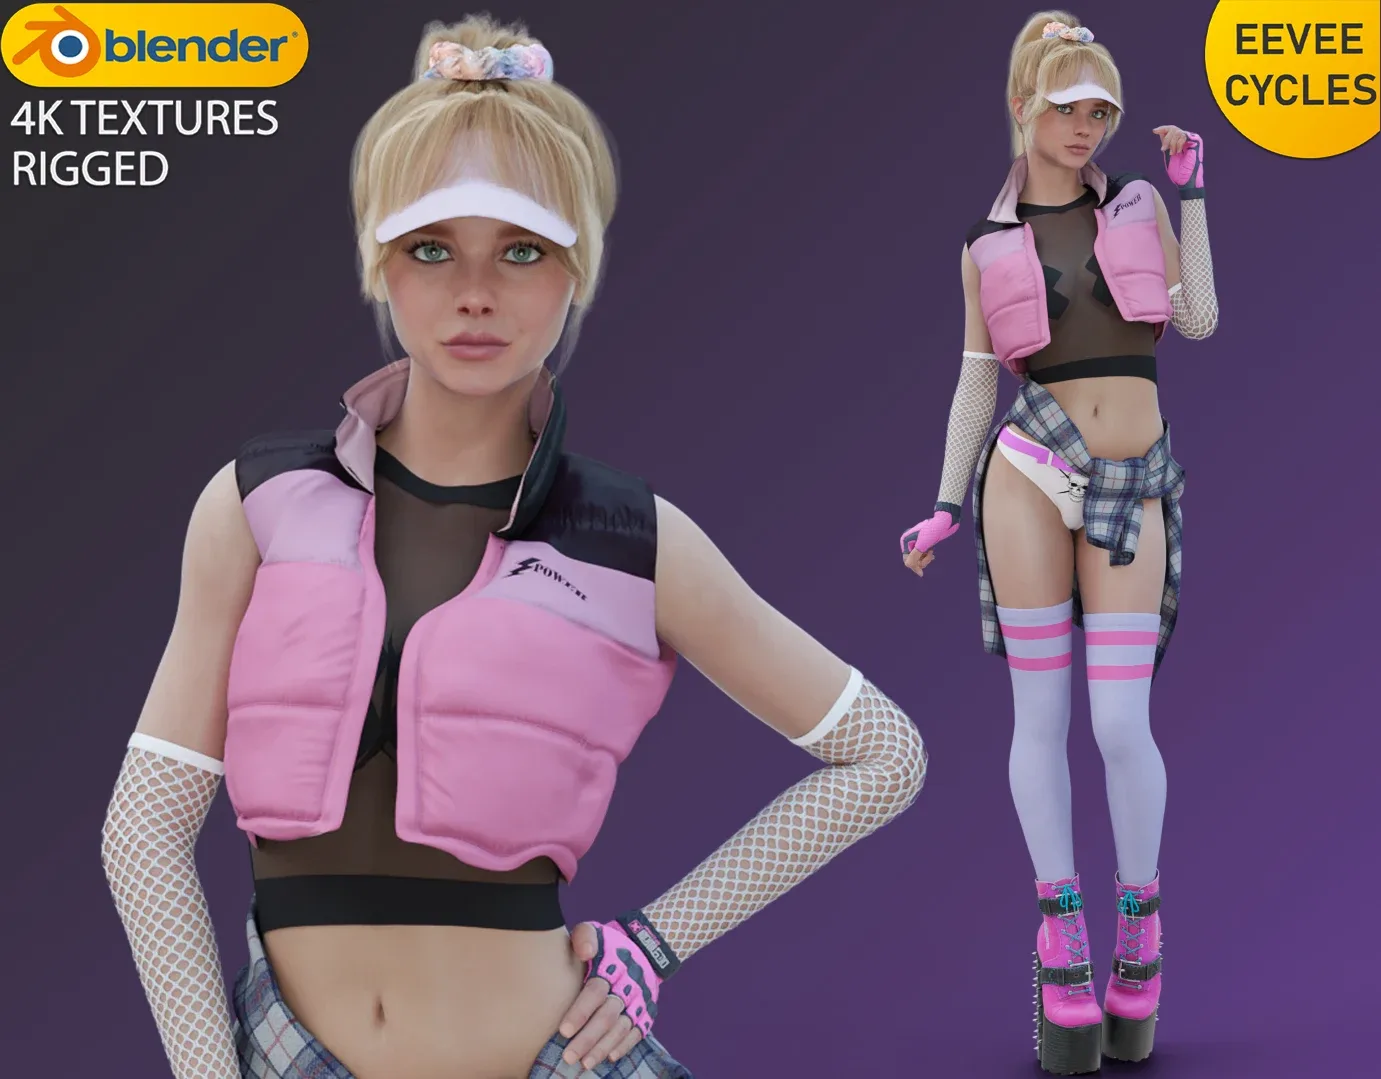 Chloe Grace Moretz - Chic Rocker Outfit - Sporty Style Fashion Free low-poly 3D model